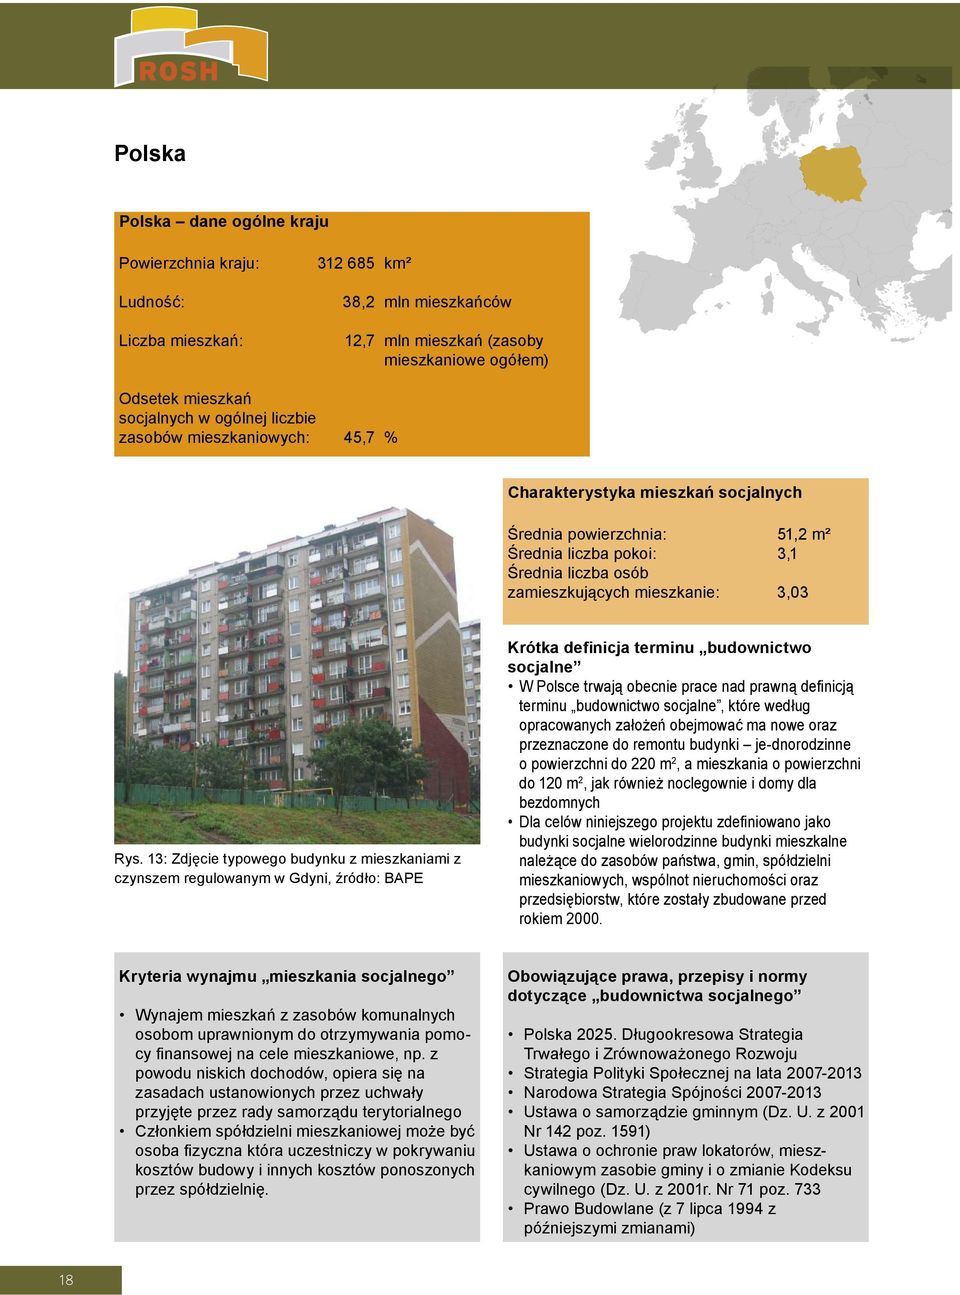 13: Zdjęcie typowego budynku z mieszkaniami z czynszem regulowanym w Gdyni, źródło: BAPE Krótka definicja terminu budownictwo socjalne W Polsce trwają obecnie prace nad prawną definicją terminu